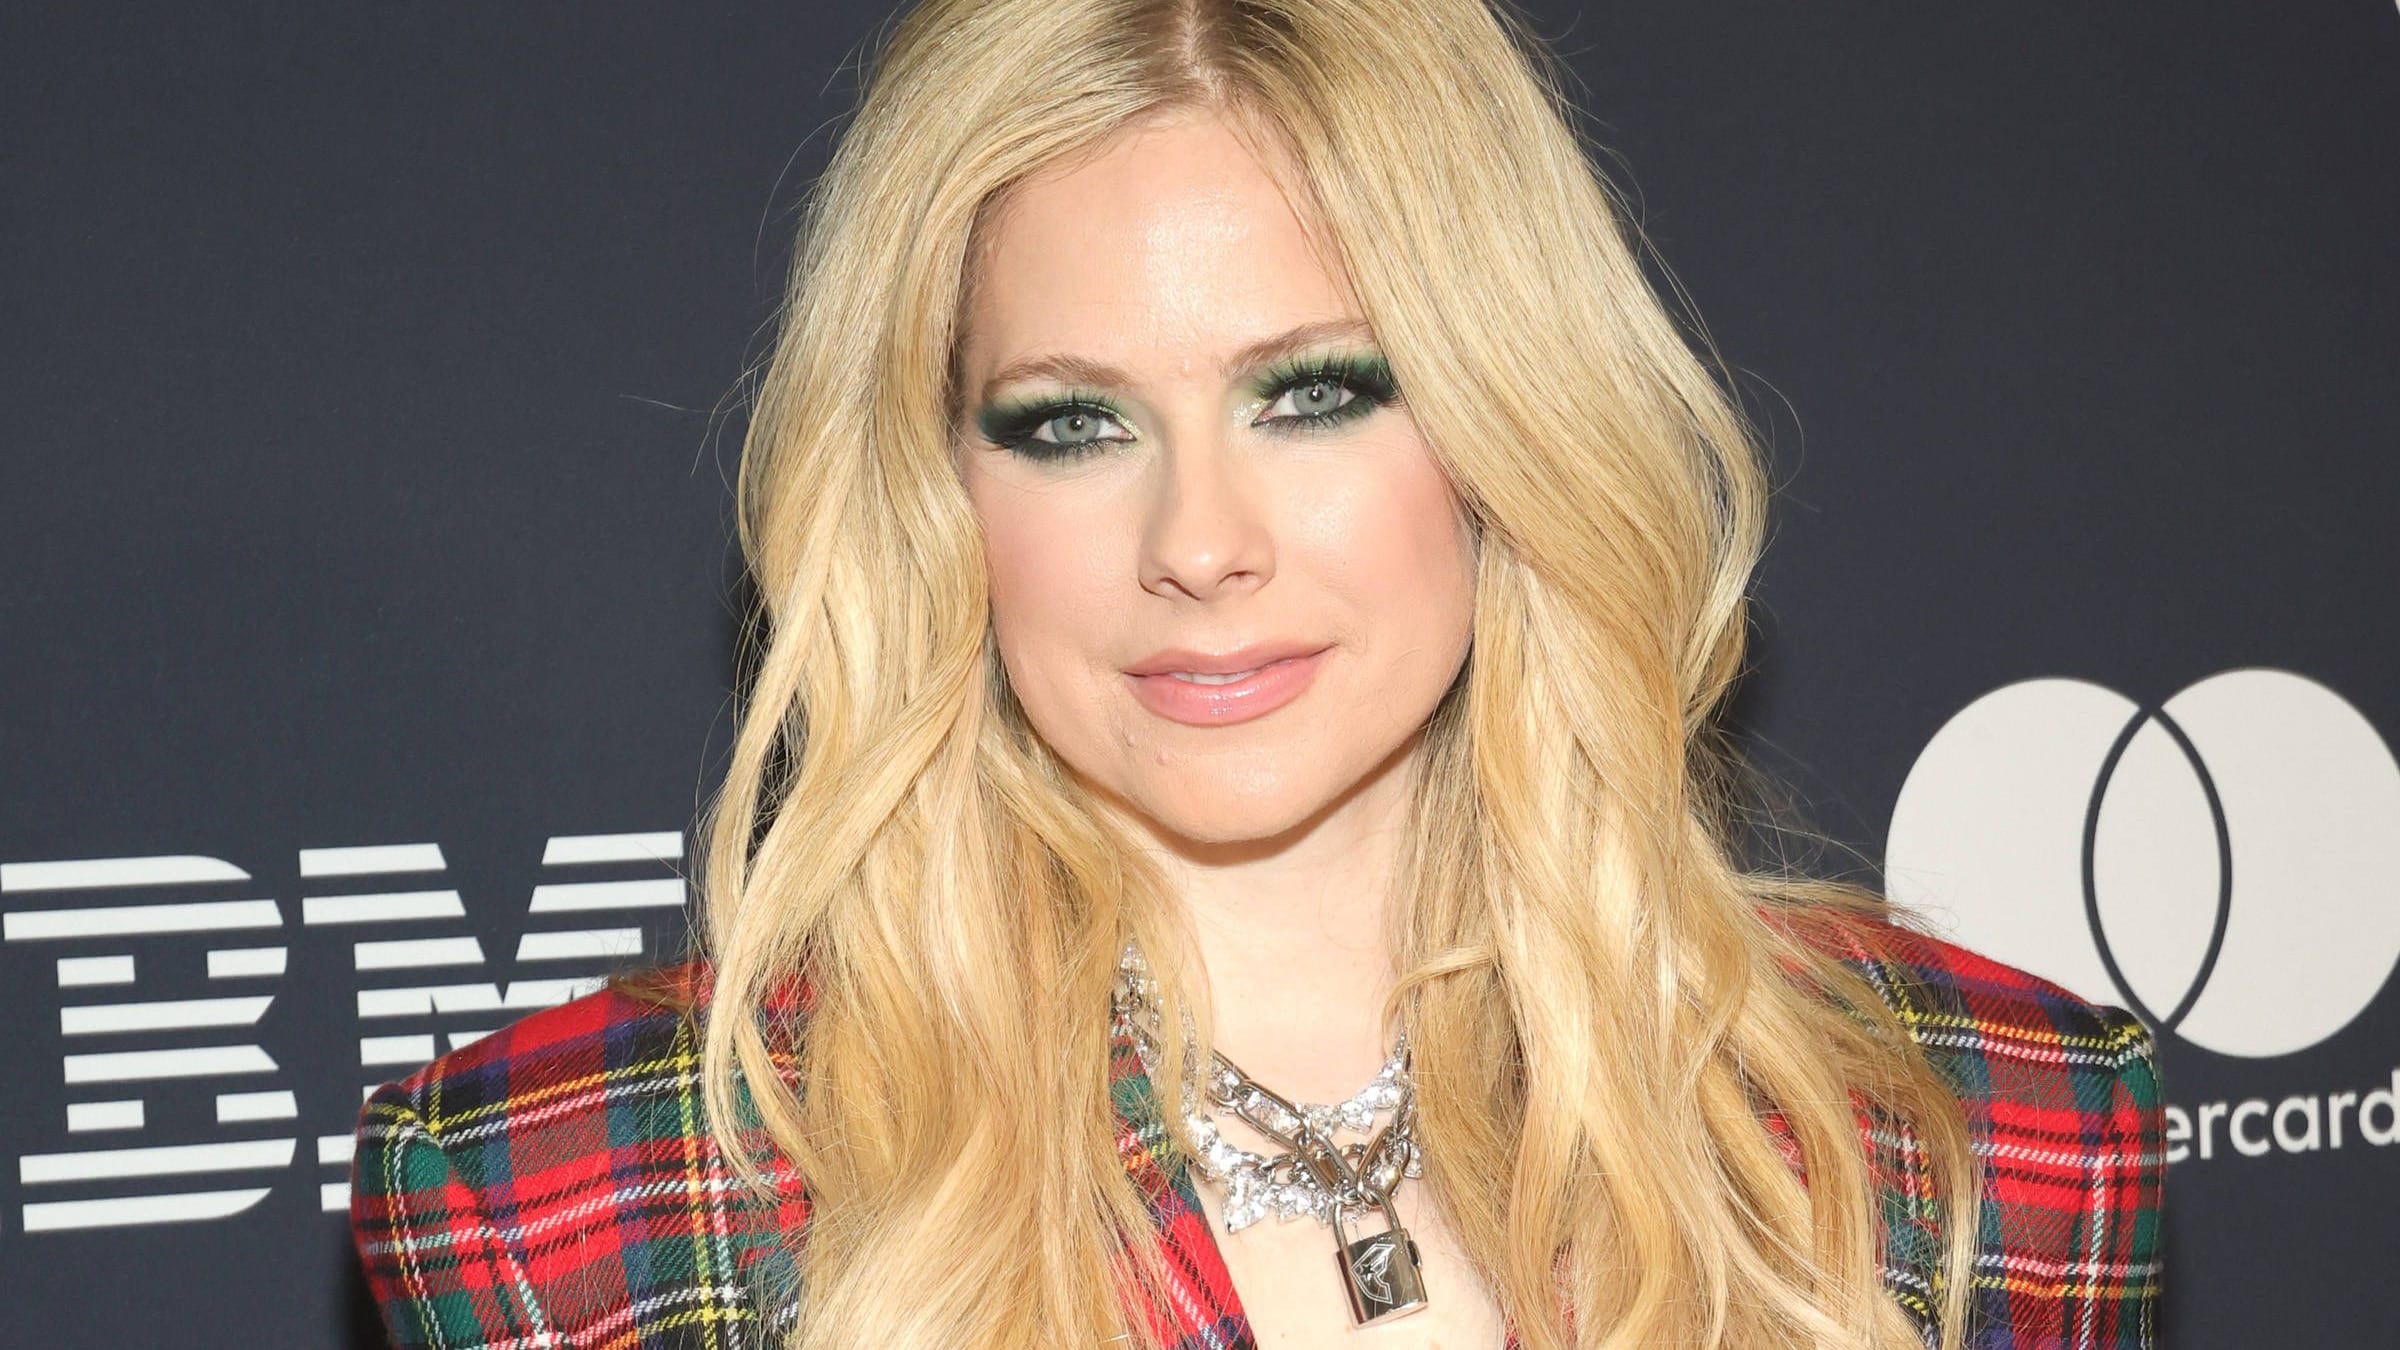 Avril Lavigne gestorben? Musikerin reagiert auf ihren angeblichen Tod